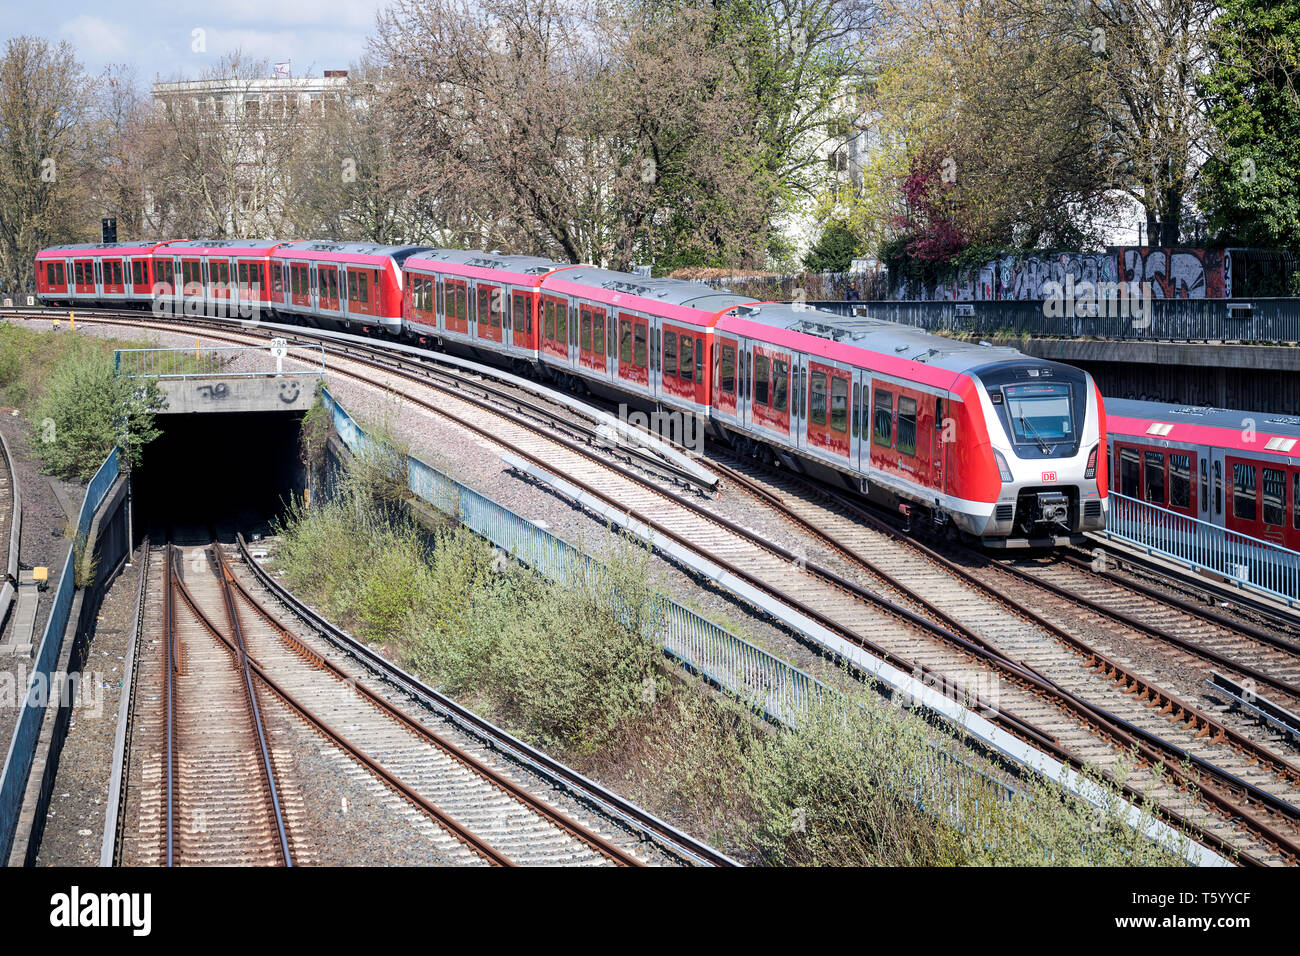 490 classe de train S-Bahn de Hambourg, de transport en commun rapide du réseau ferroviaire dans la région métropolitaine de Hambourg. Banque D'Images